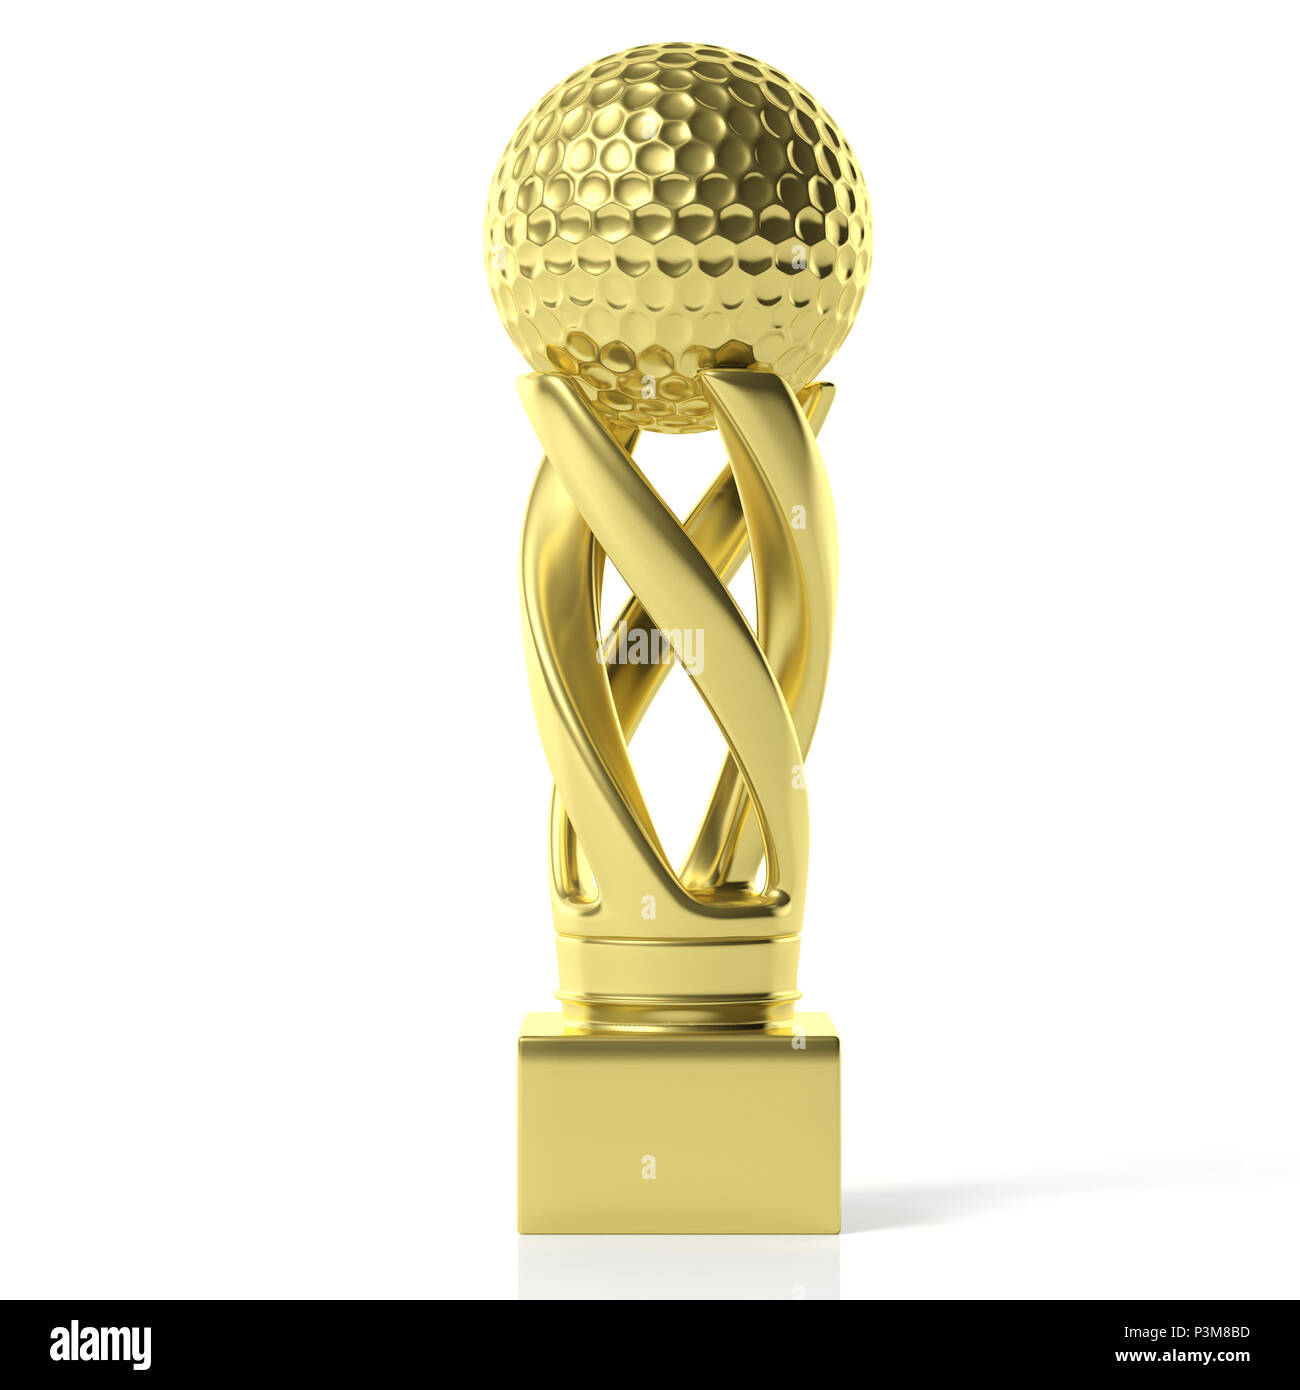 Golf Cup. Golf goldene Trophäe auf weißem Hintergrund. 3D-Darstellung  Stockfotografie - Alamy